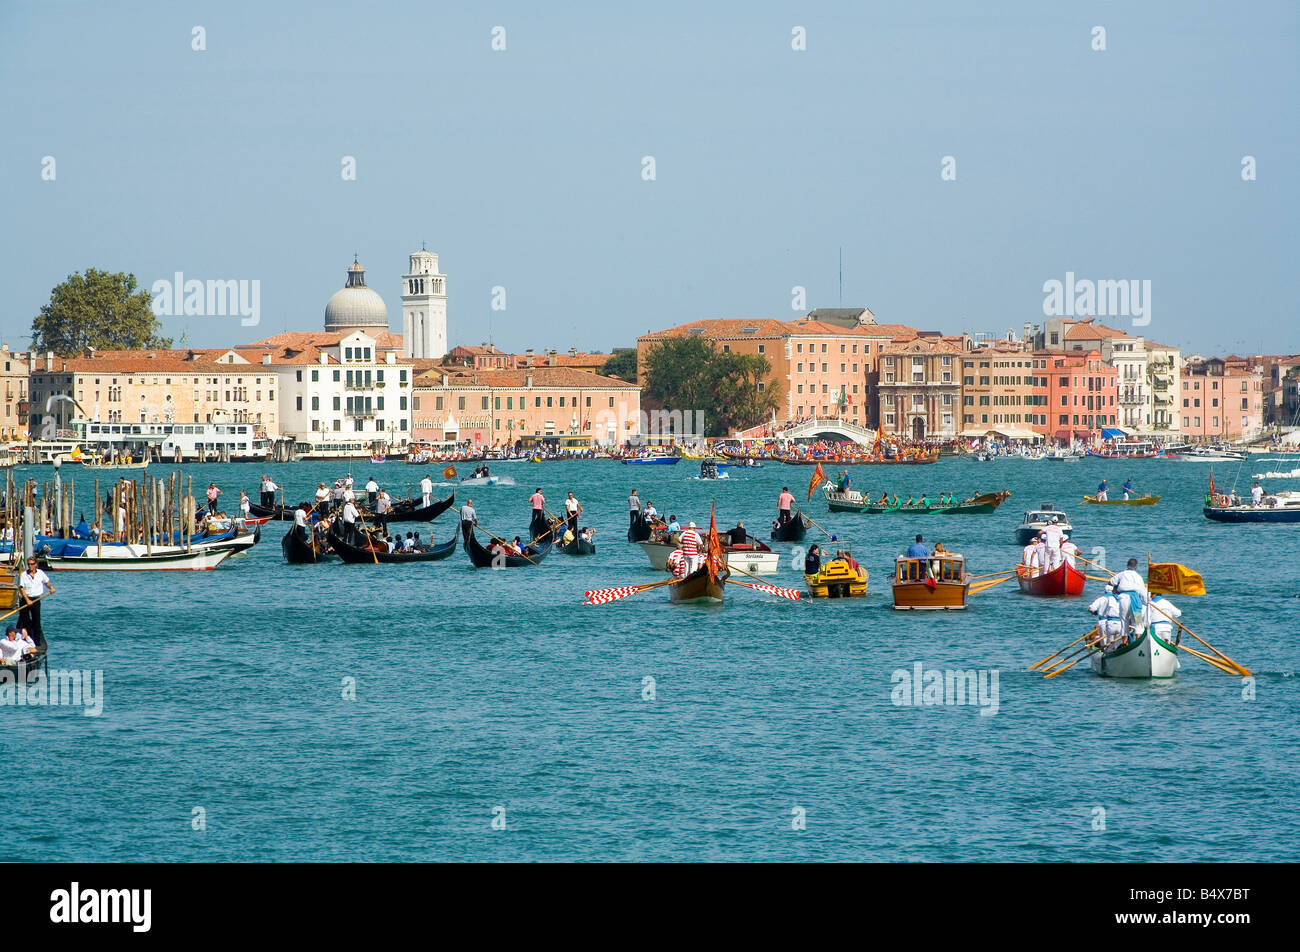 La gente que viaja en las góndolas, cerca del Gran Canal de Venecia Foto de stock